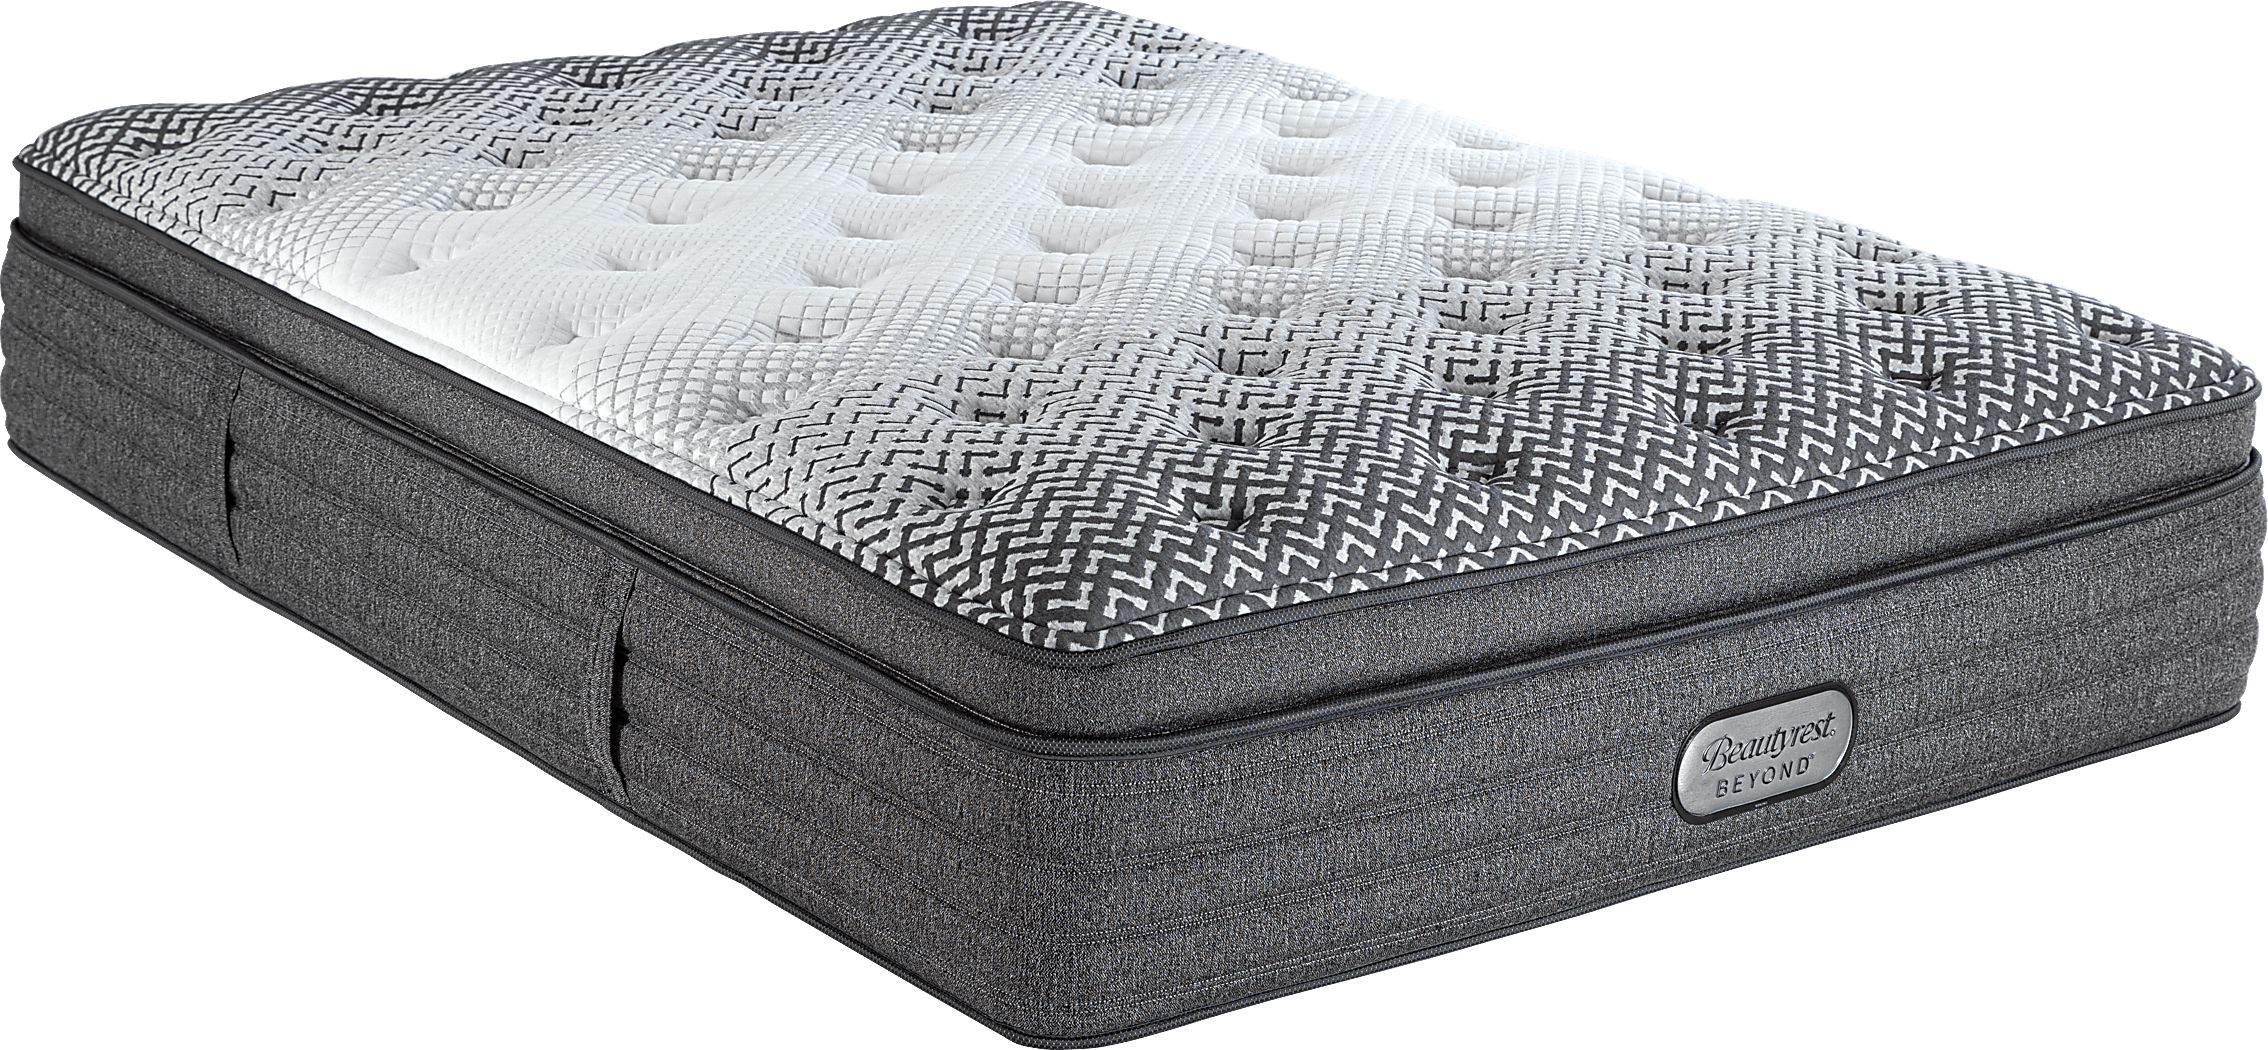 beautyrest silver harper plush pillowtop twin xl mattress